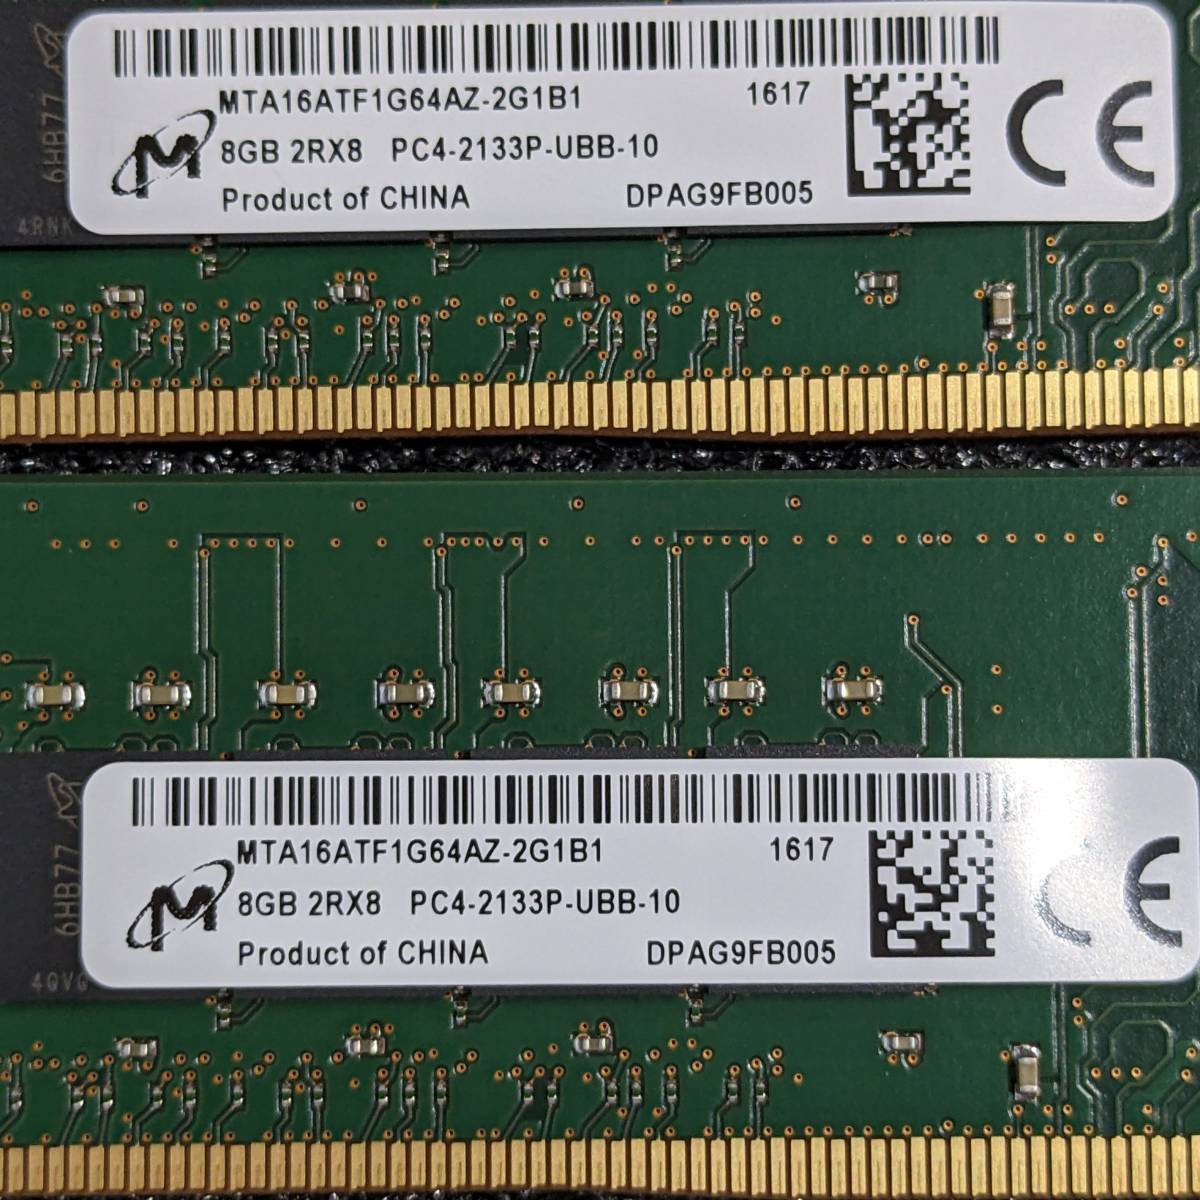 DDR4メモリ 32GB(8GB4枚組) Crucial CT4K8G4DFD8213 [DDR4-2133 PC4